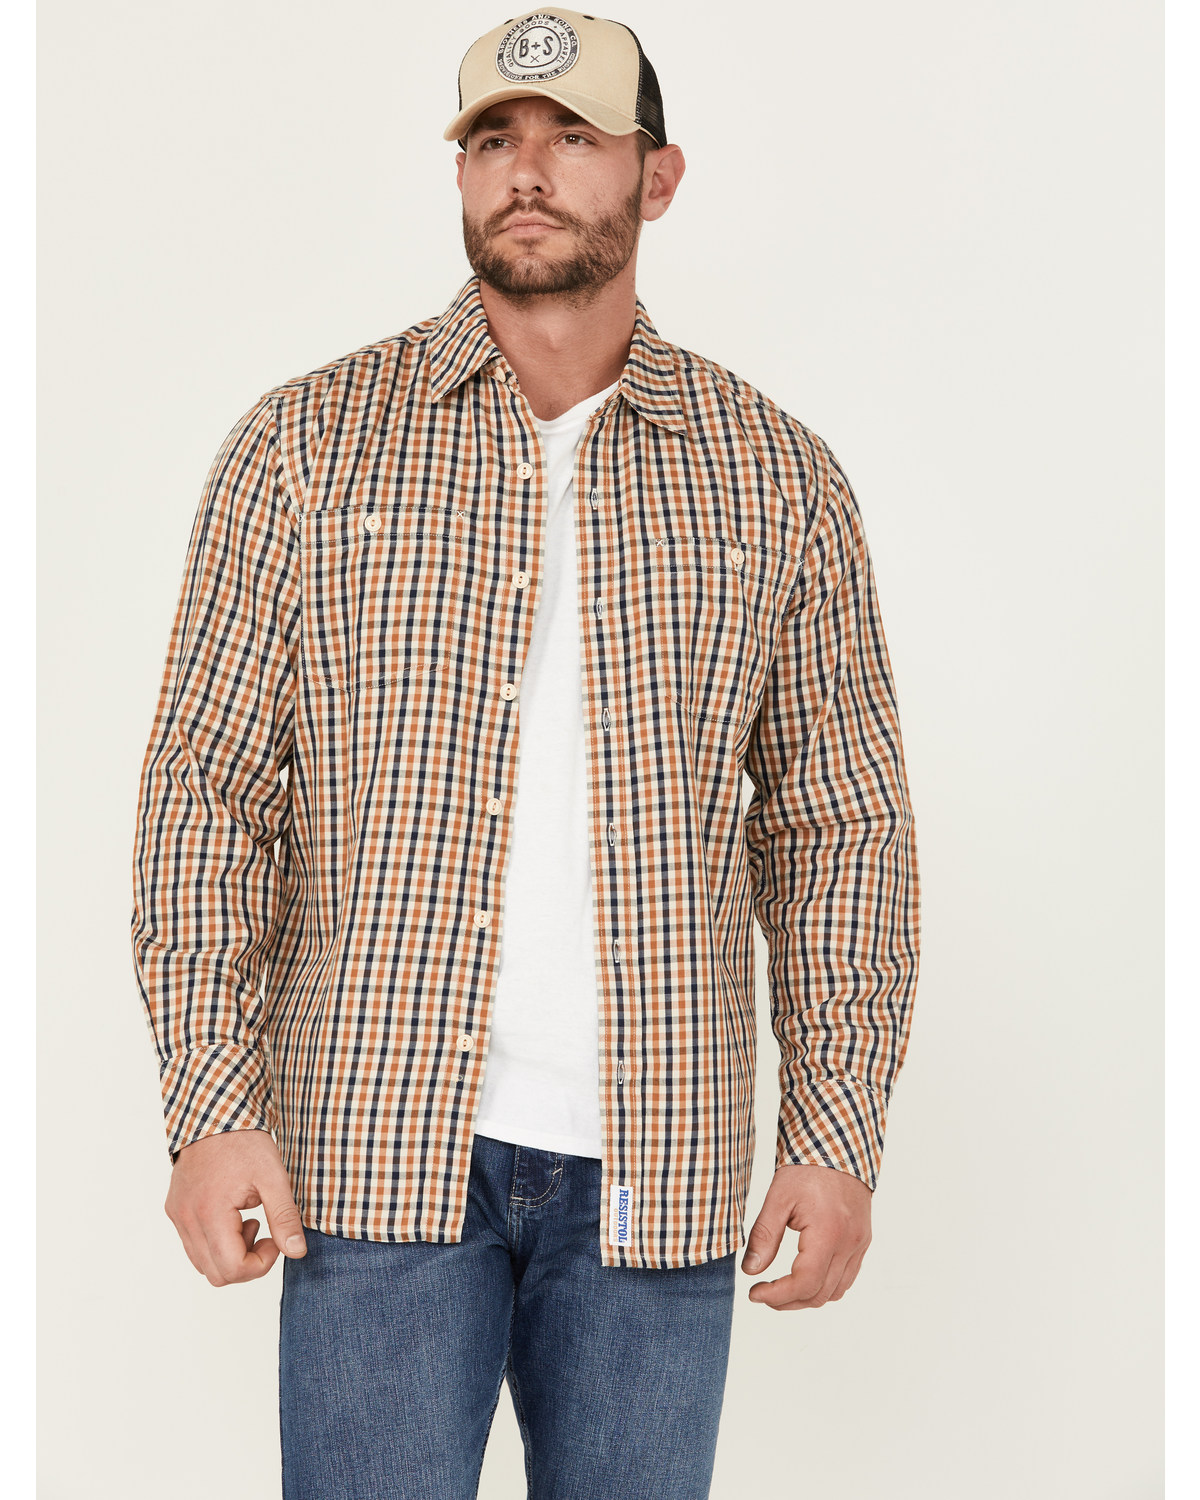 Resistol Men's Sierra Checkered Long Sleeve Button Down Shirt